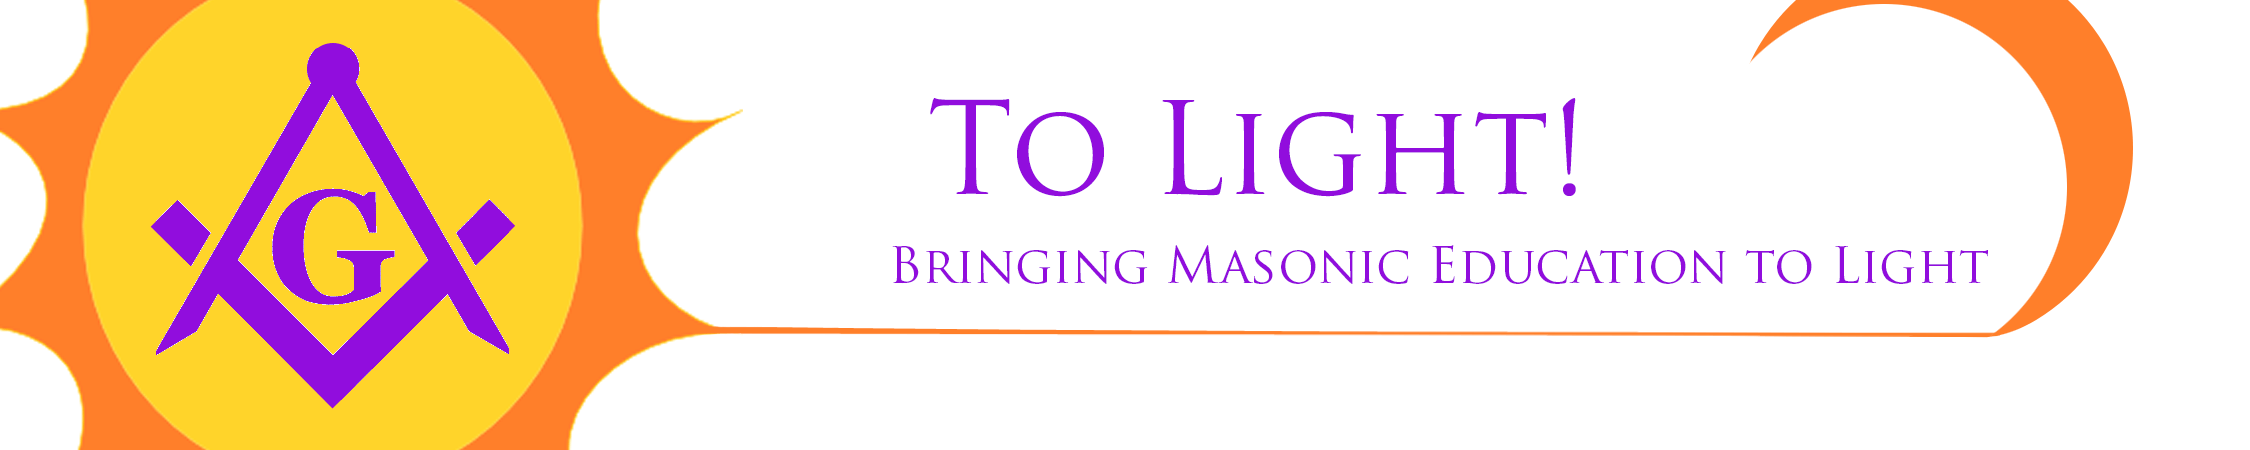 To Light! logo